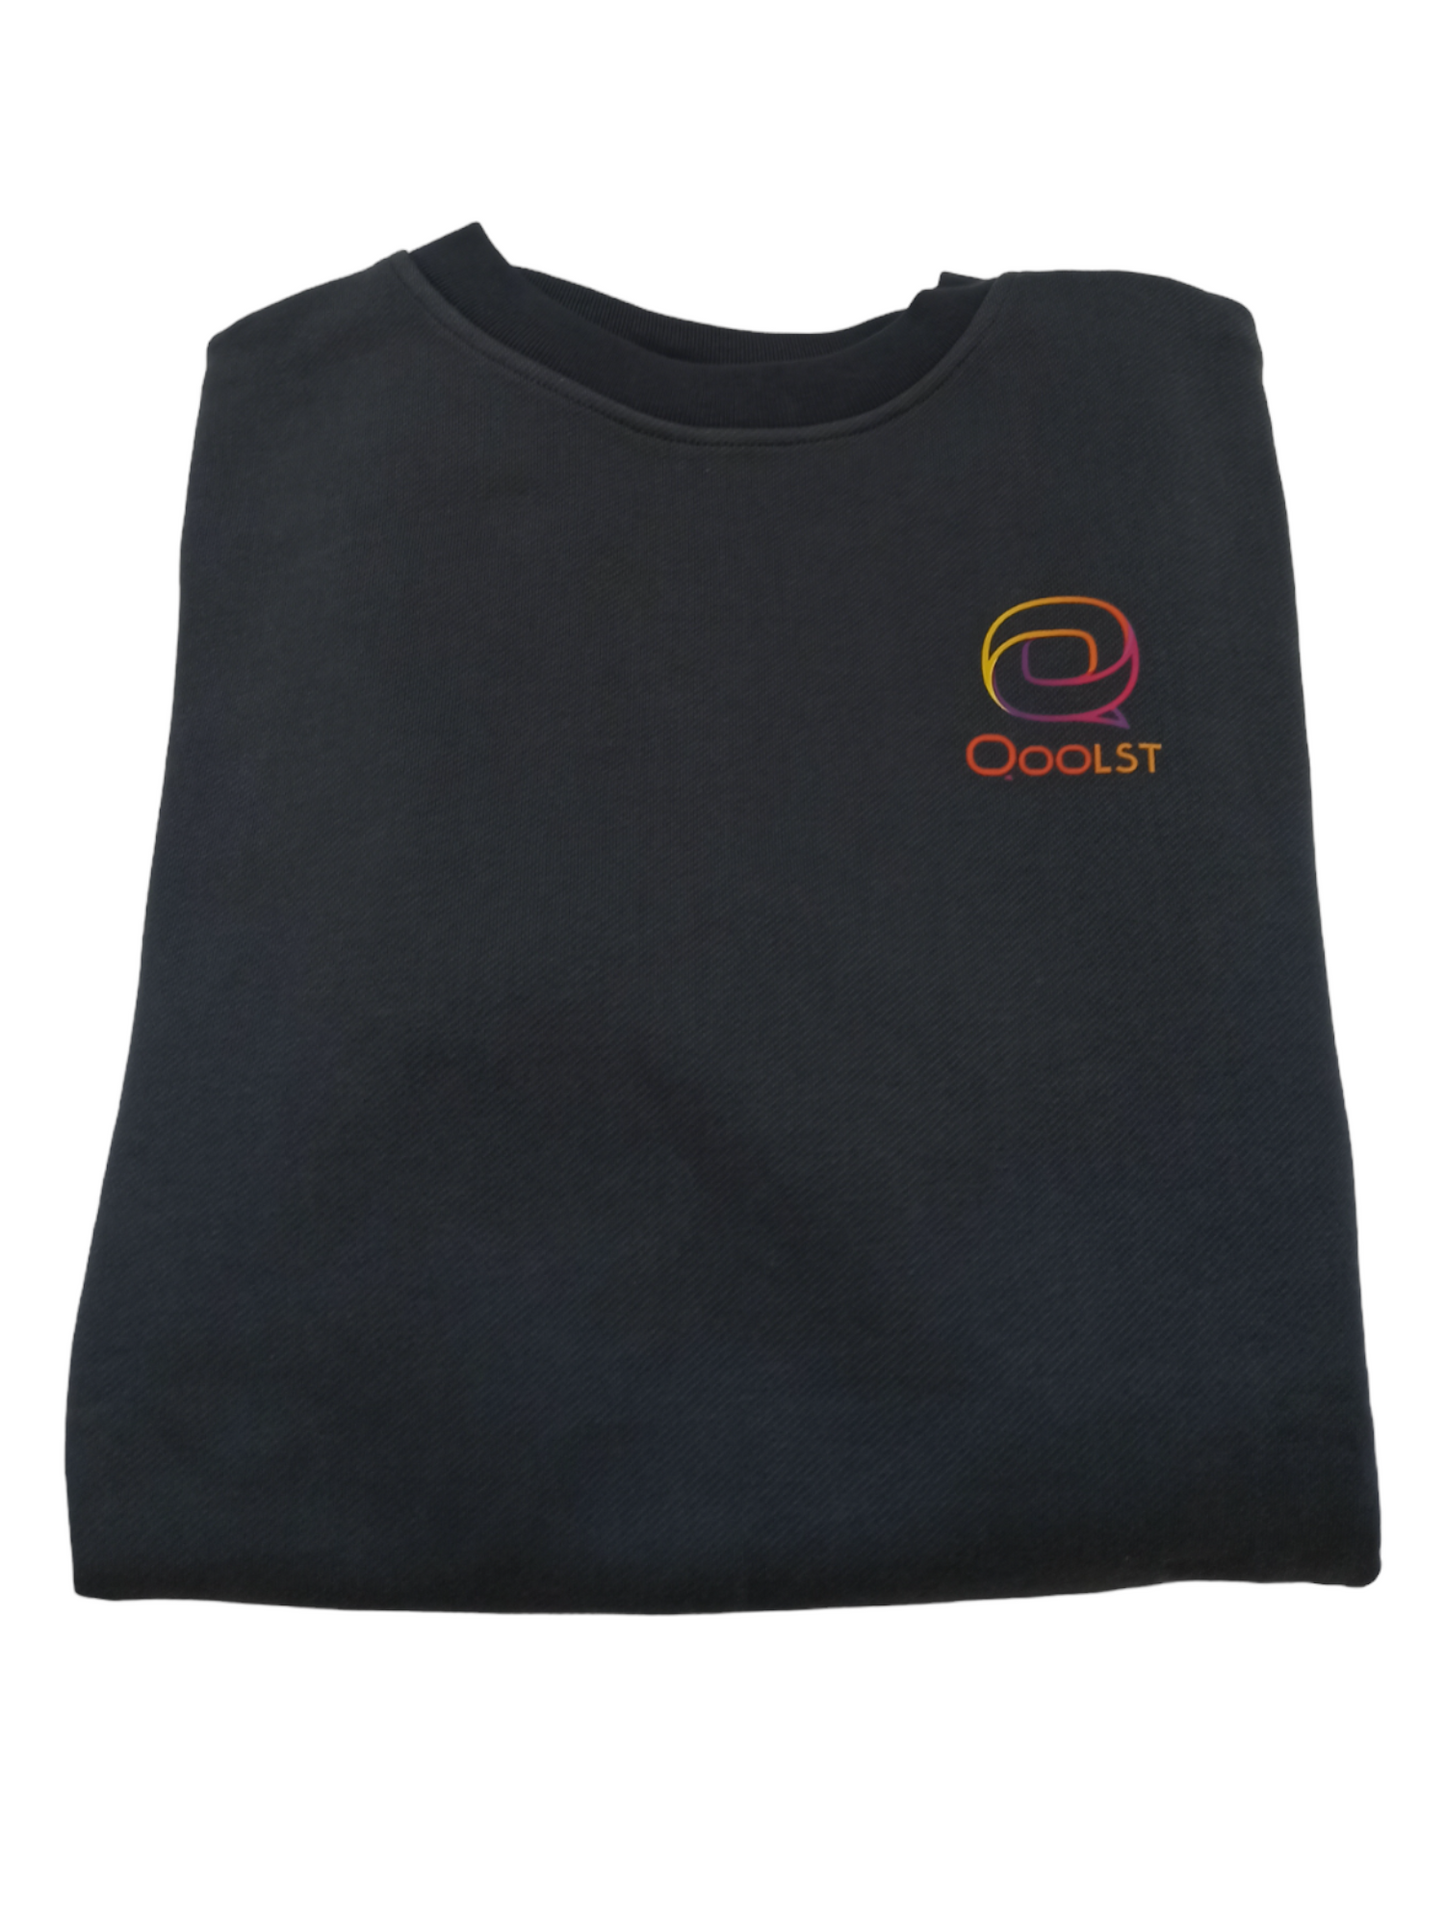 Sweats pour femmes et hommes vêtements Qoolst en coton